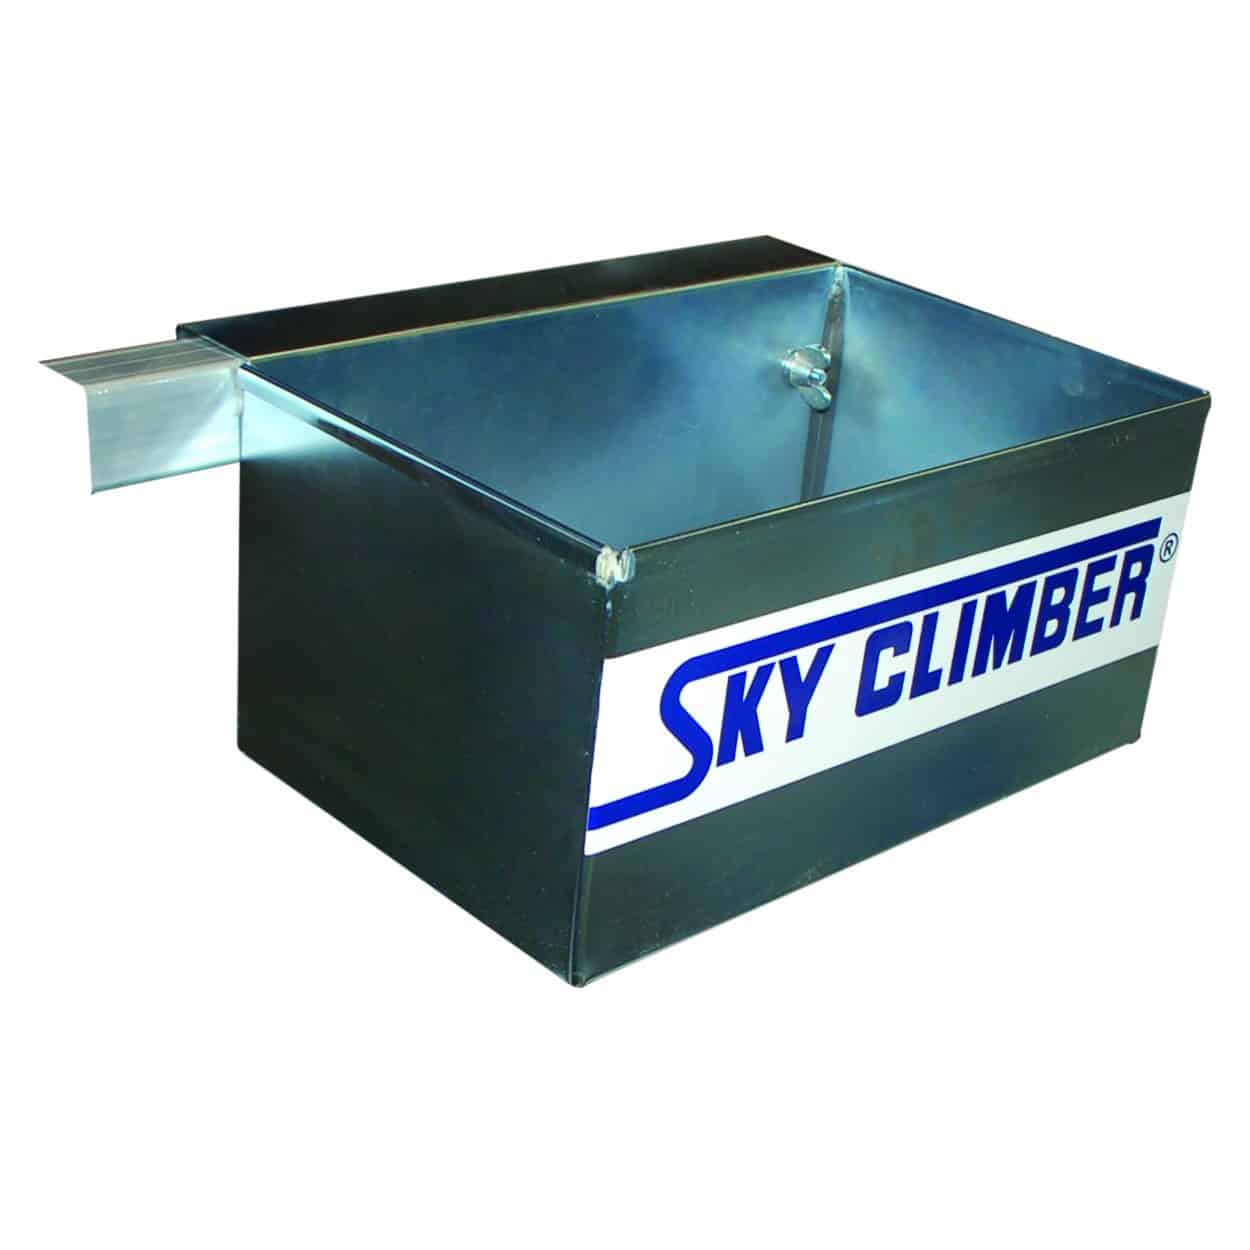 https://skyclimber.com/wp-content/uploads/2018/09/SSUtoolbox_square.jpg